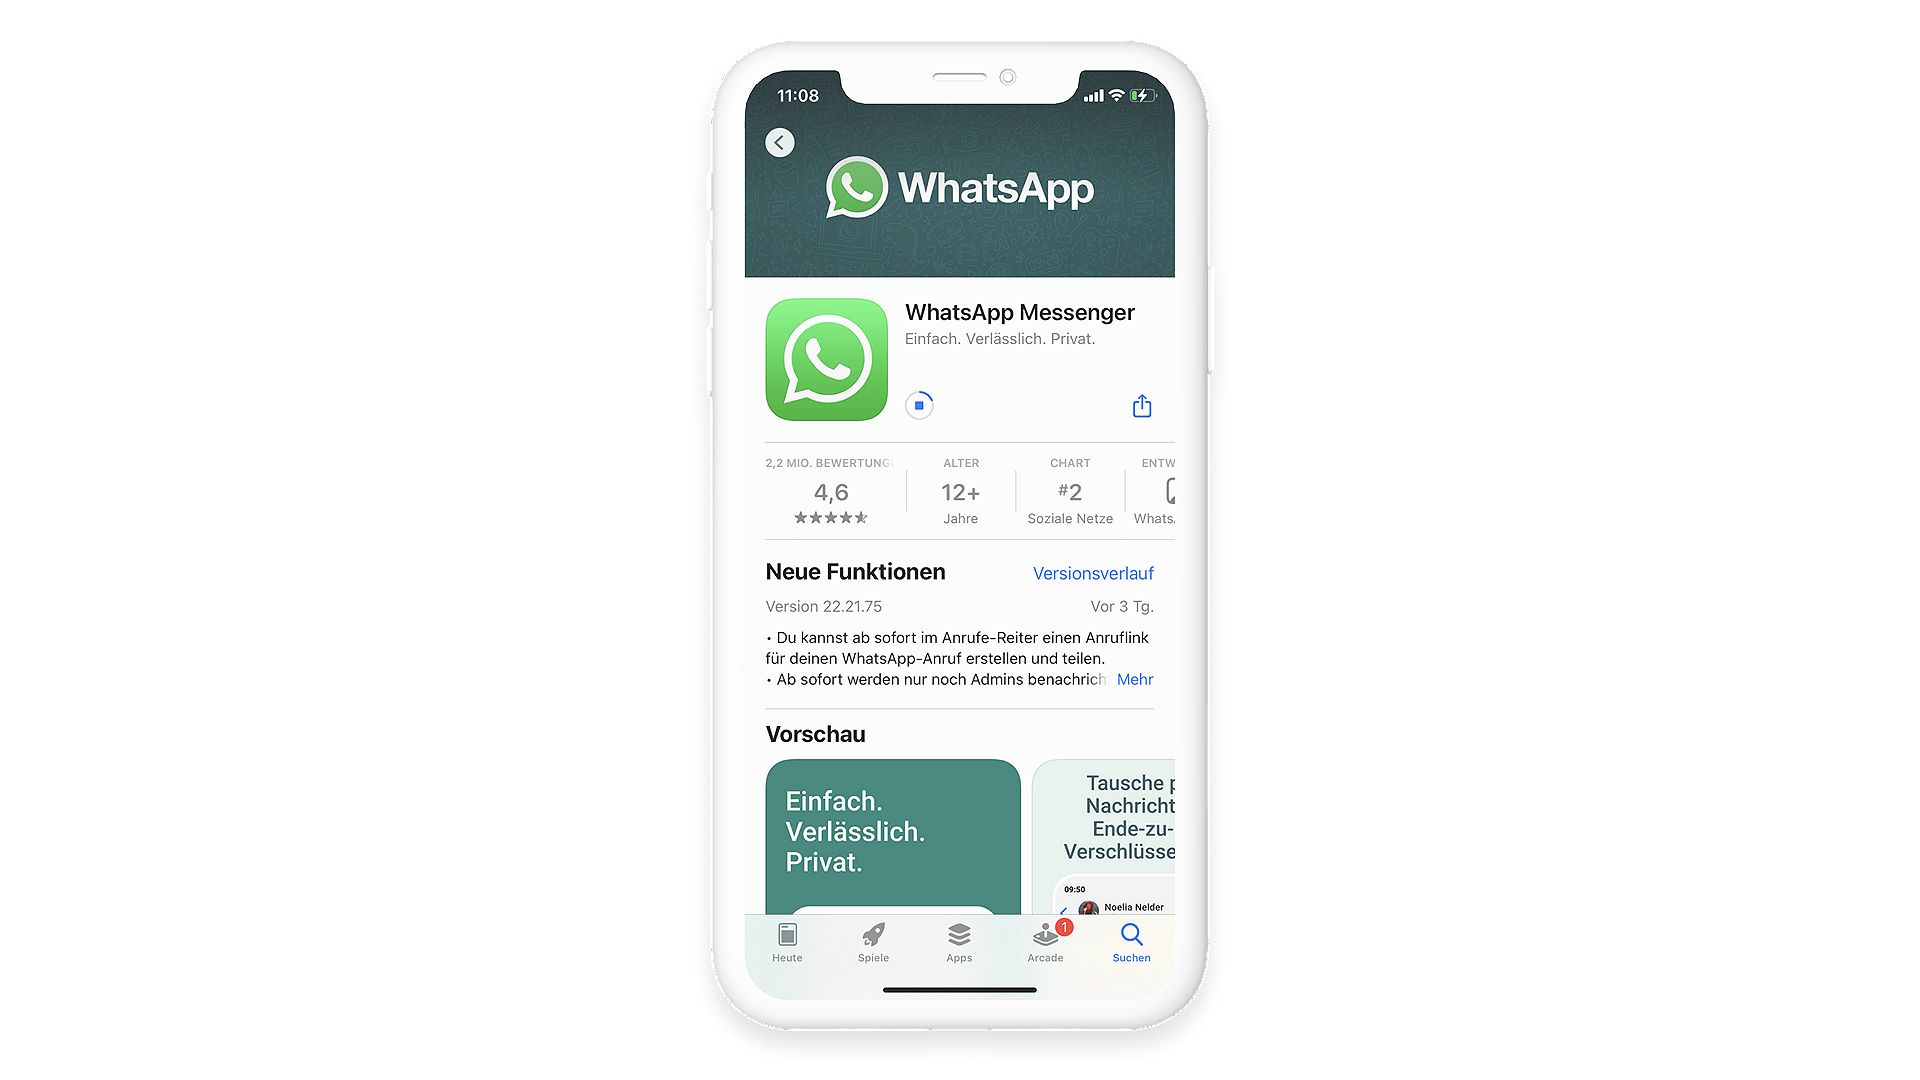 Der Download des WhatsApp Messengers aus dem Appstore kann etwas dauern